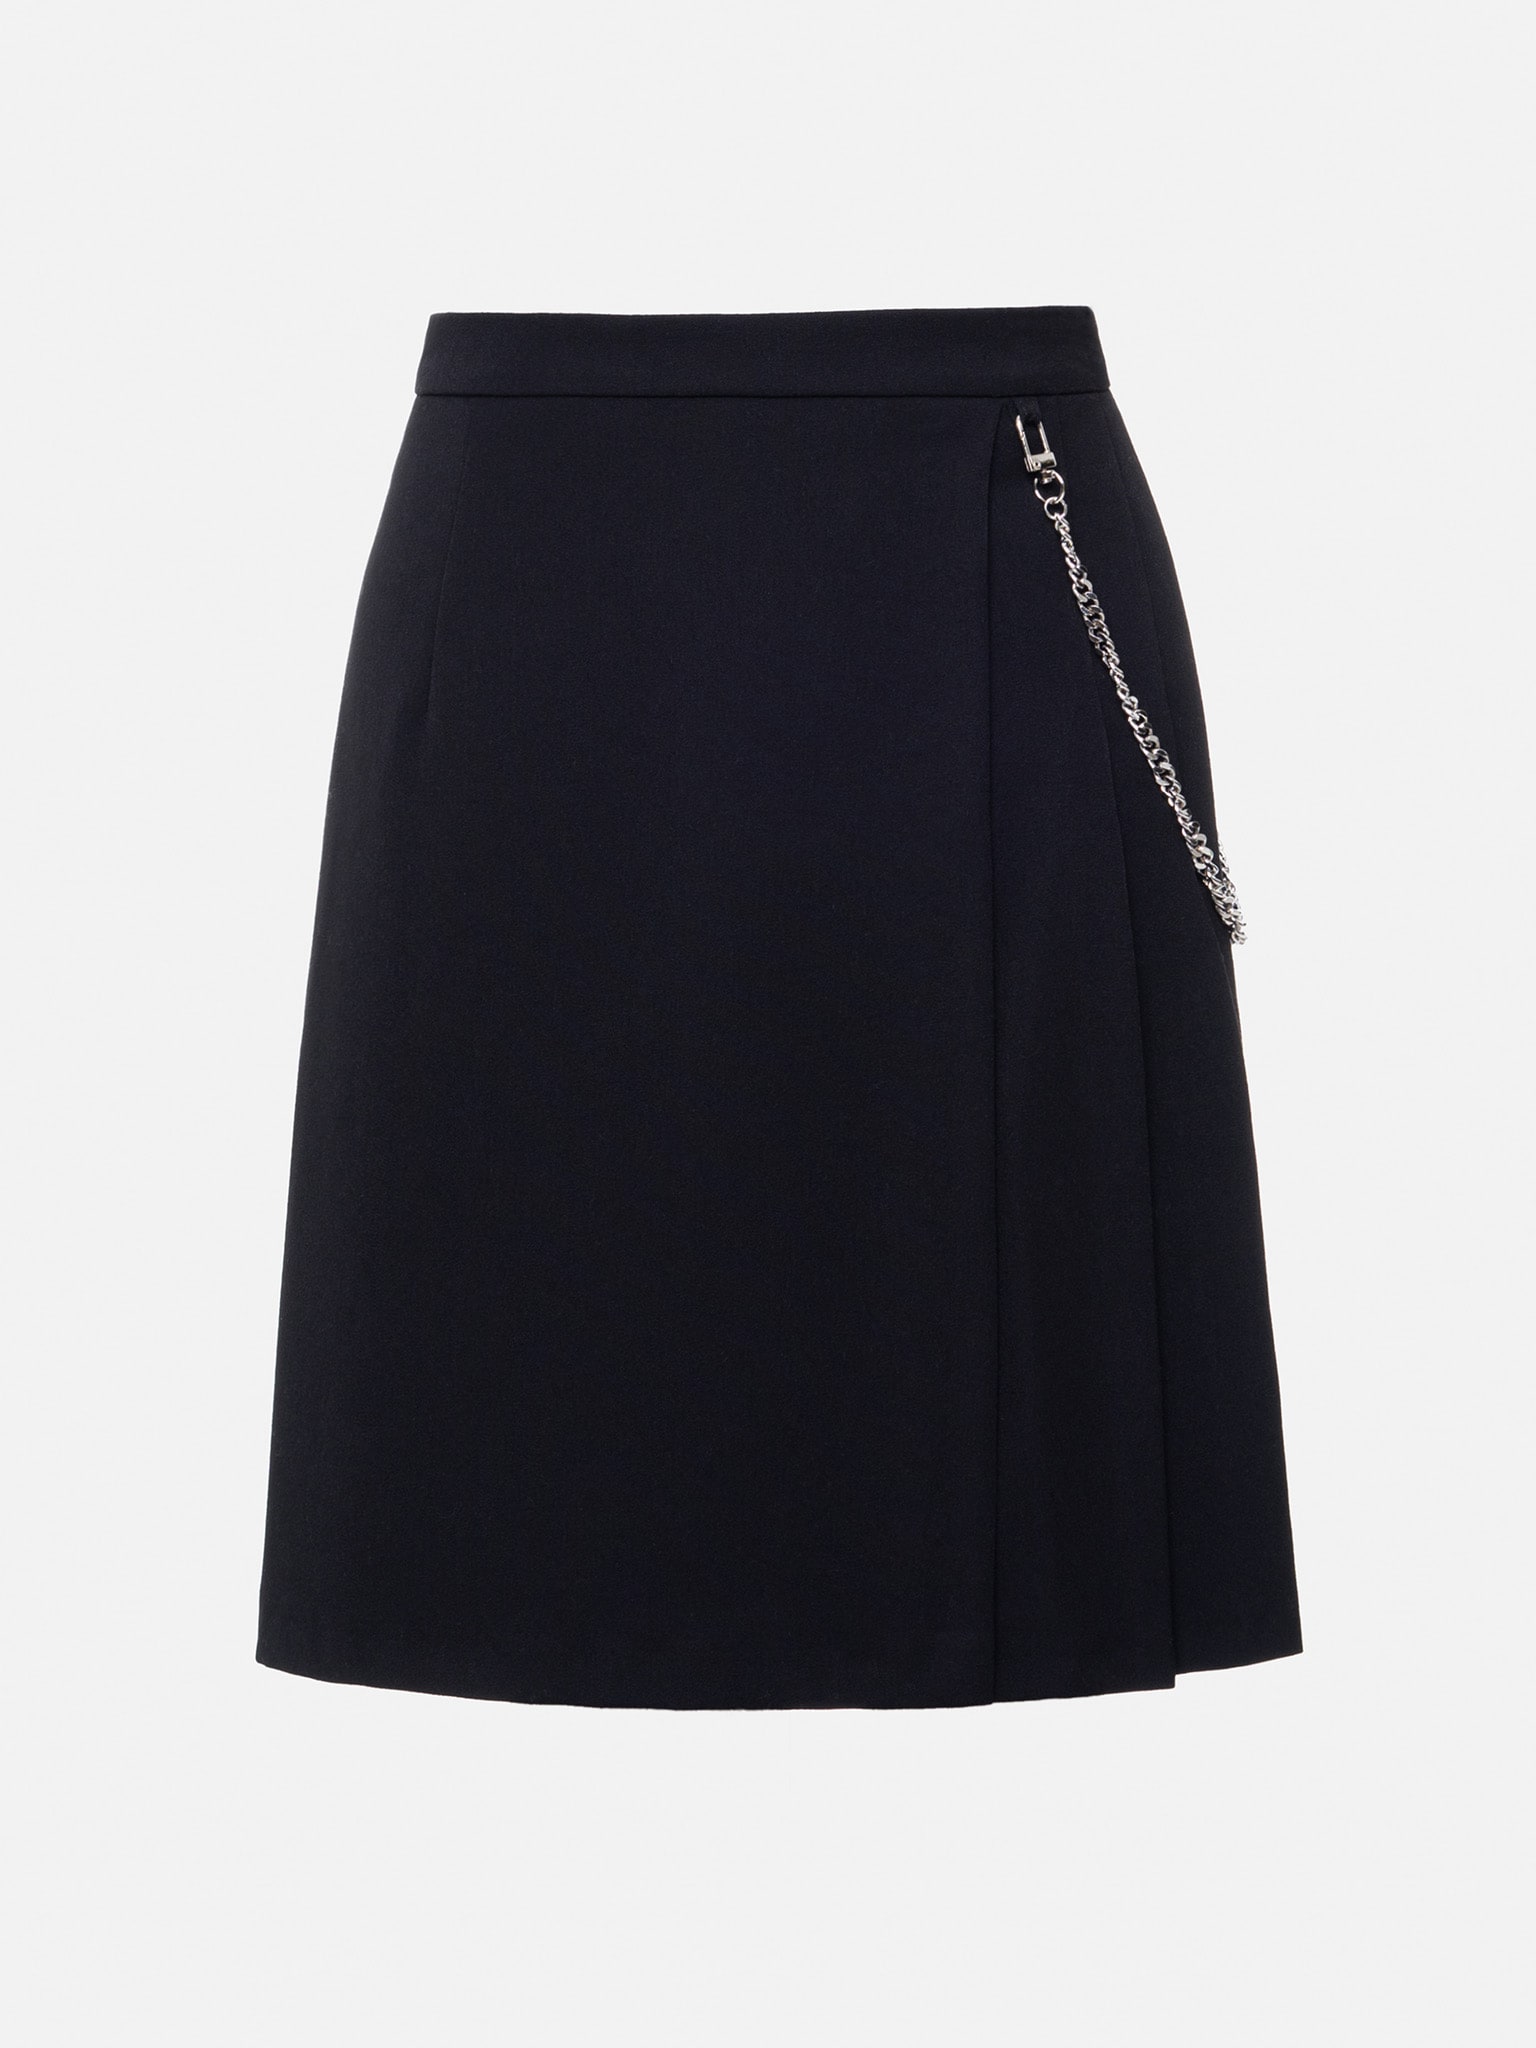 Chain-embellished flared mini skirt